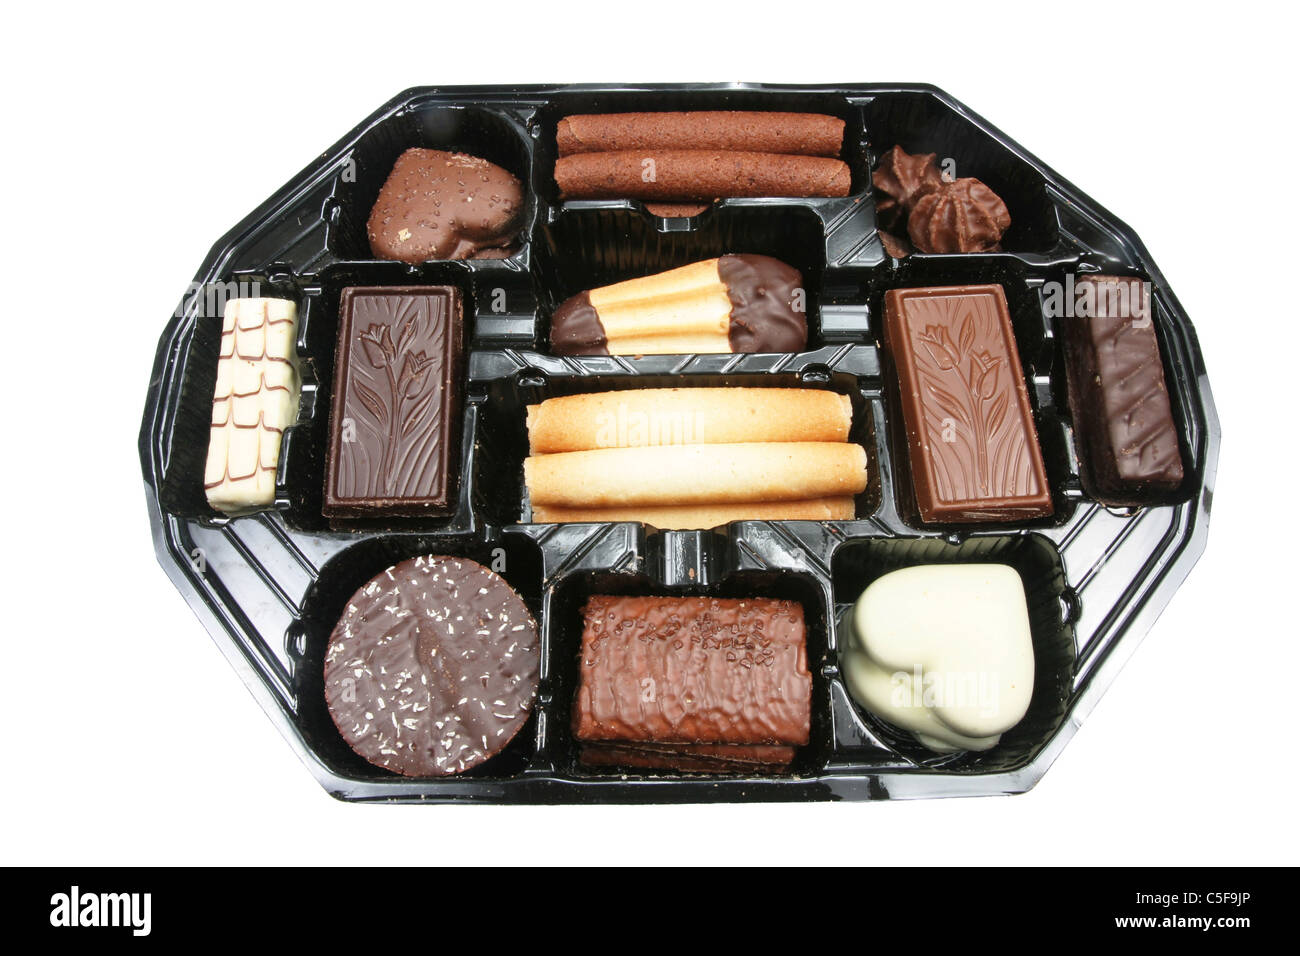 Tablett mit belgischer Schokolade Kekse auf weiß Stockfoto